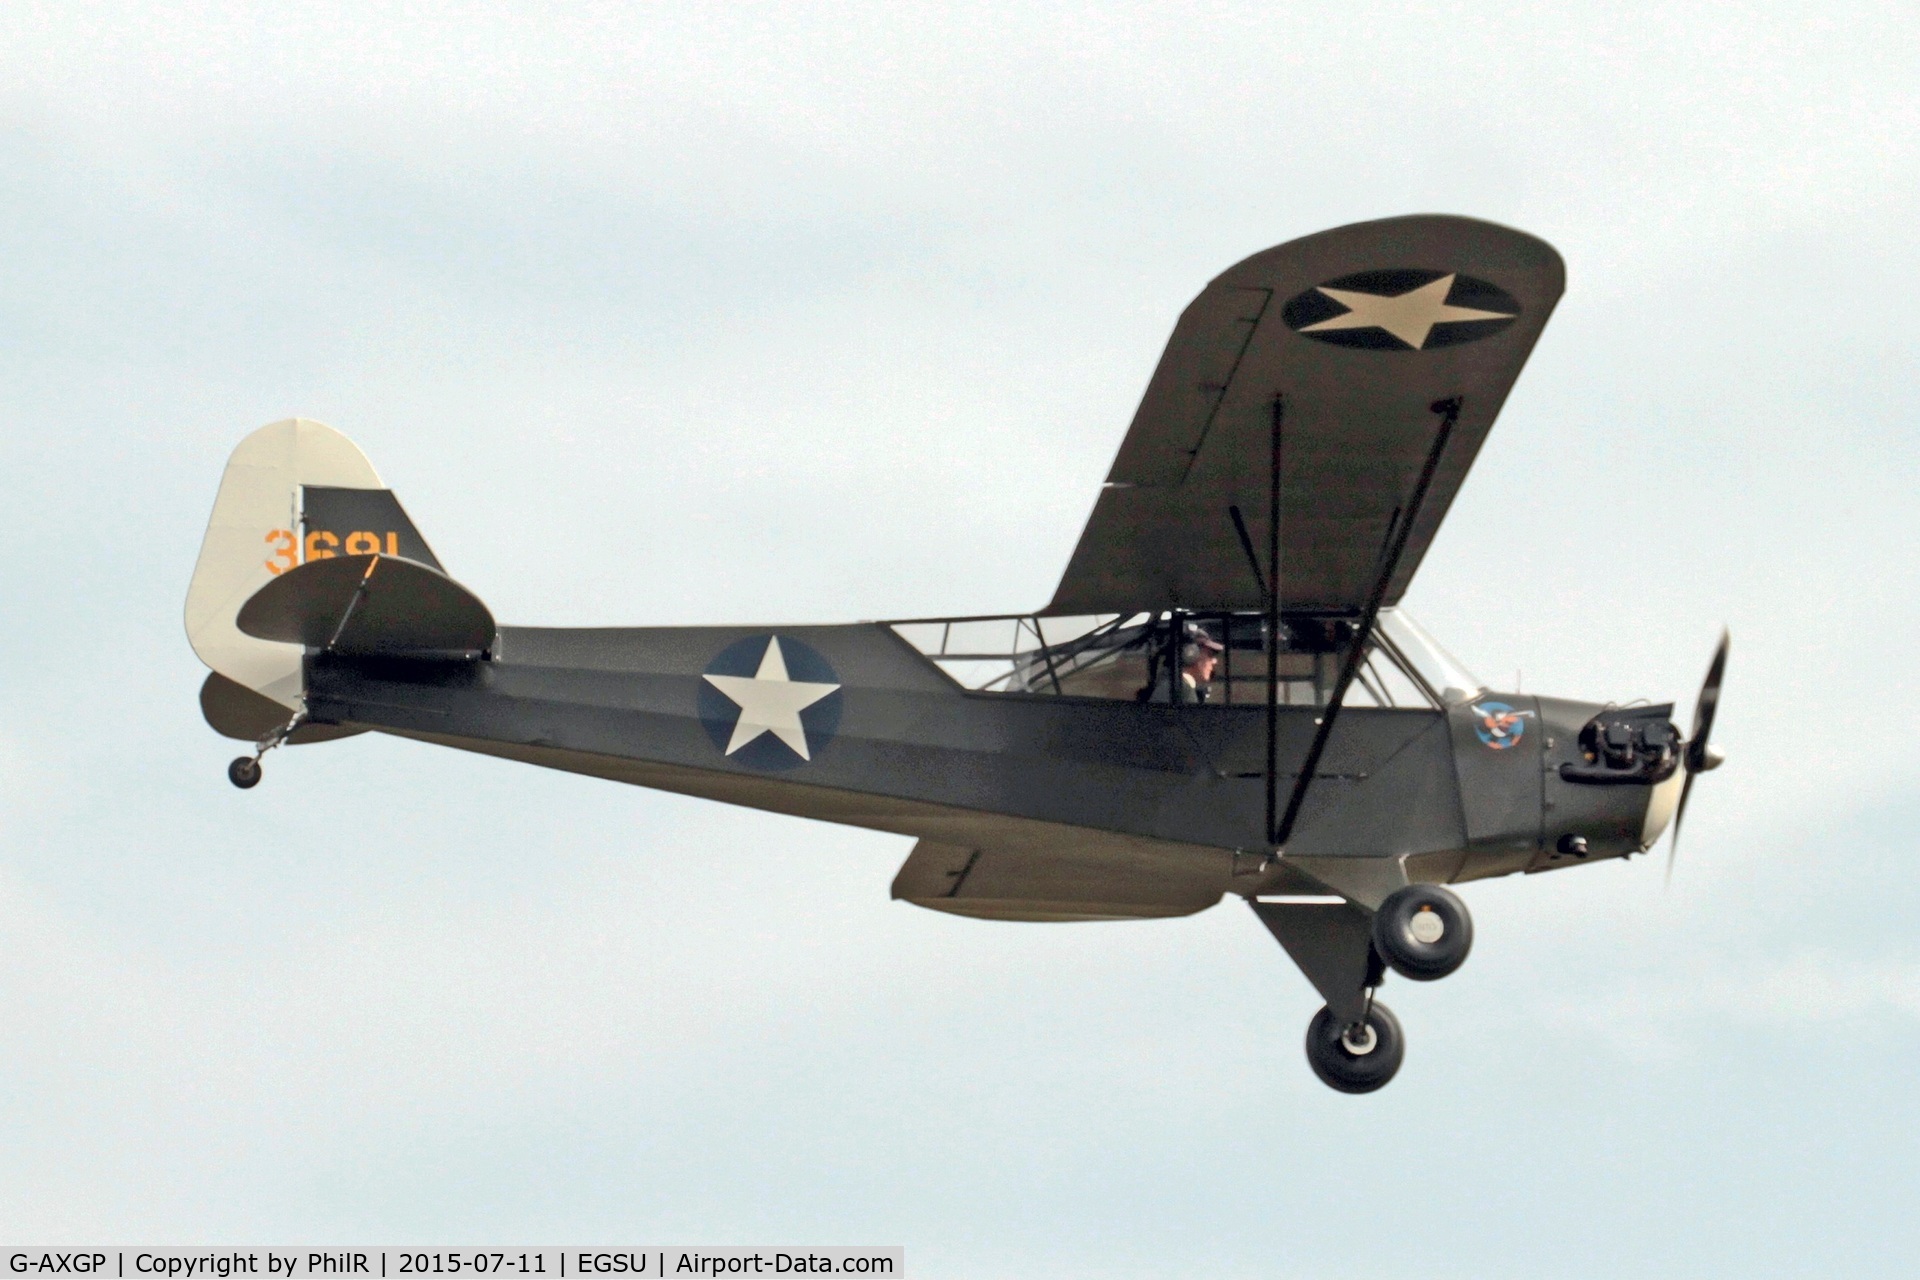 G-AXGP, 1942 Piper J3C-90 Cub C/N 9542, 3681 G-AXGP 1942 Piper J3C-90 Cub Duxford